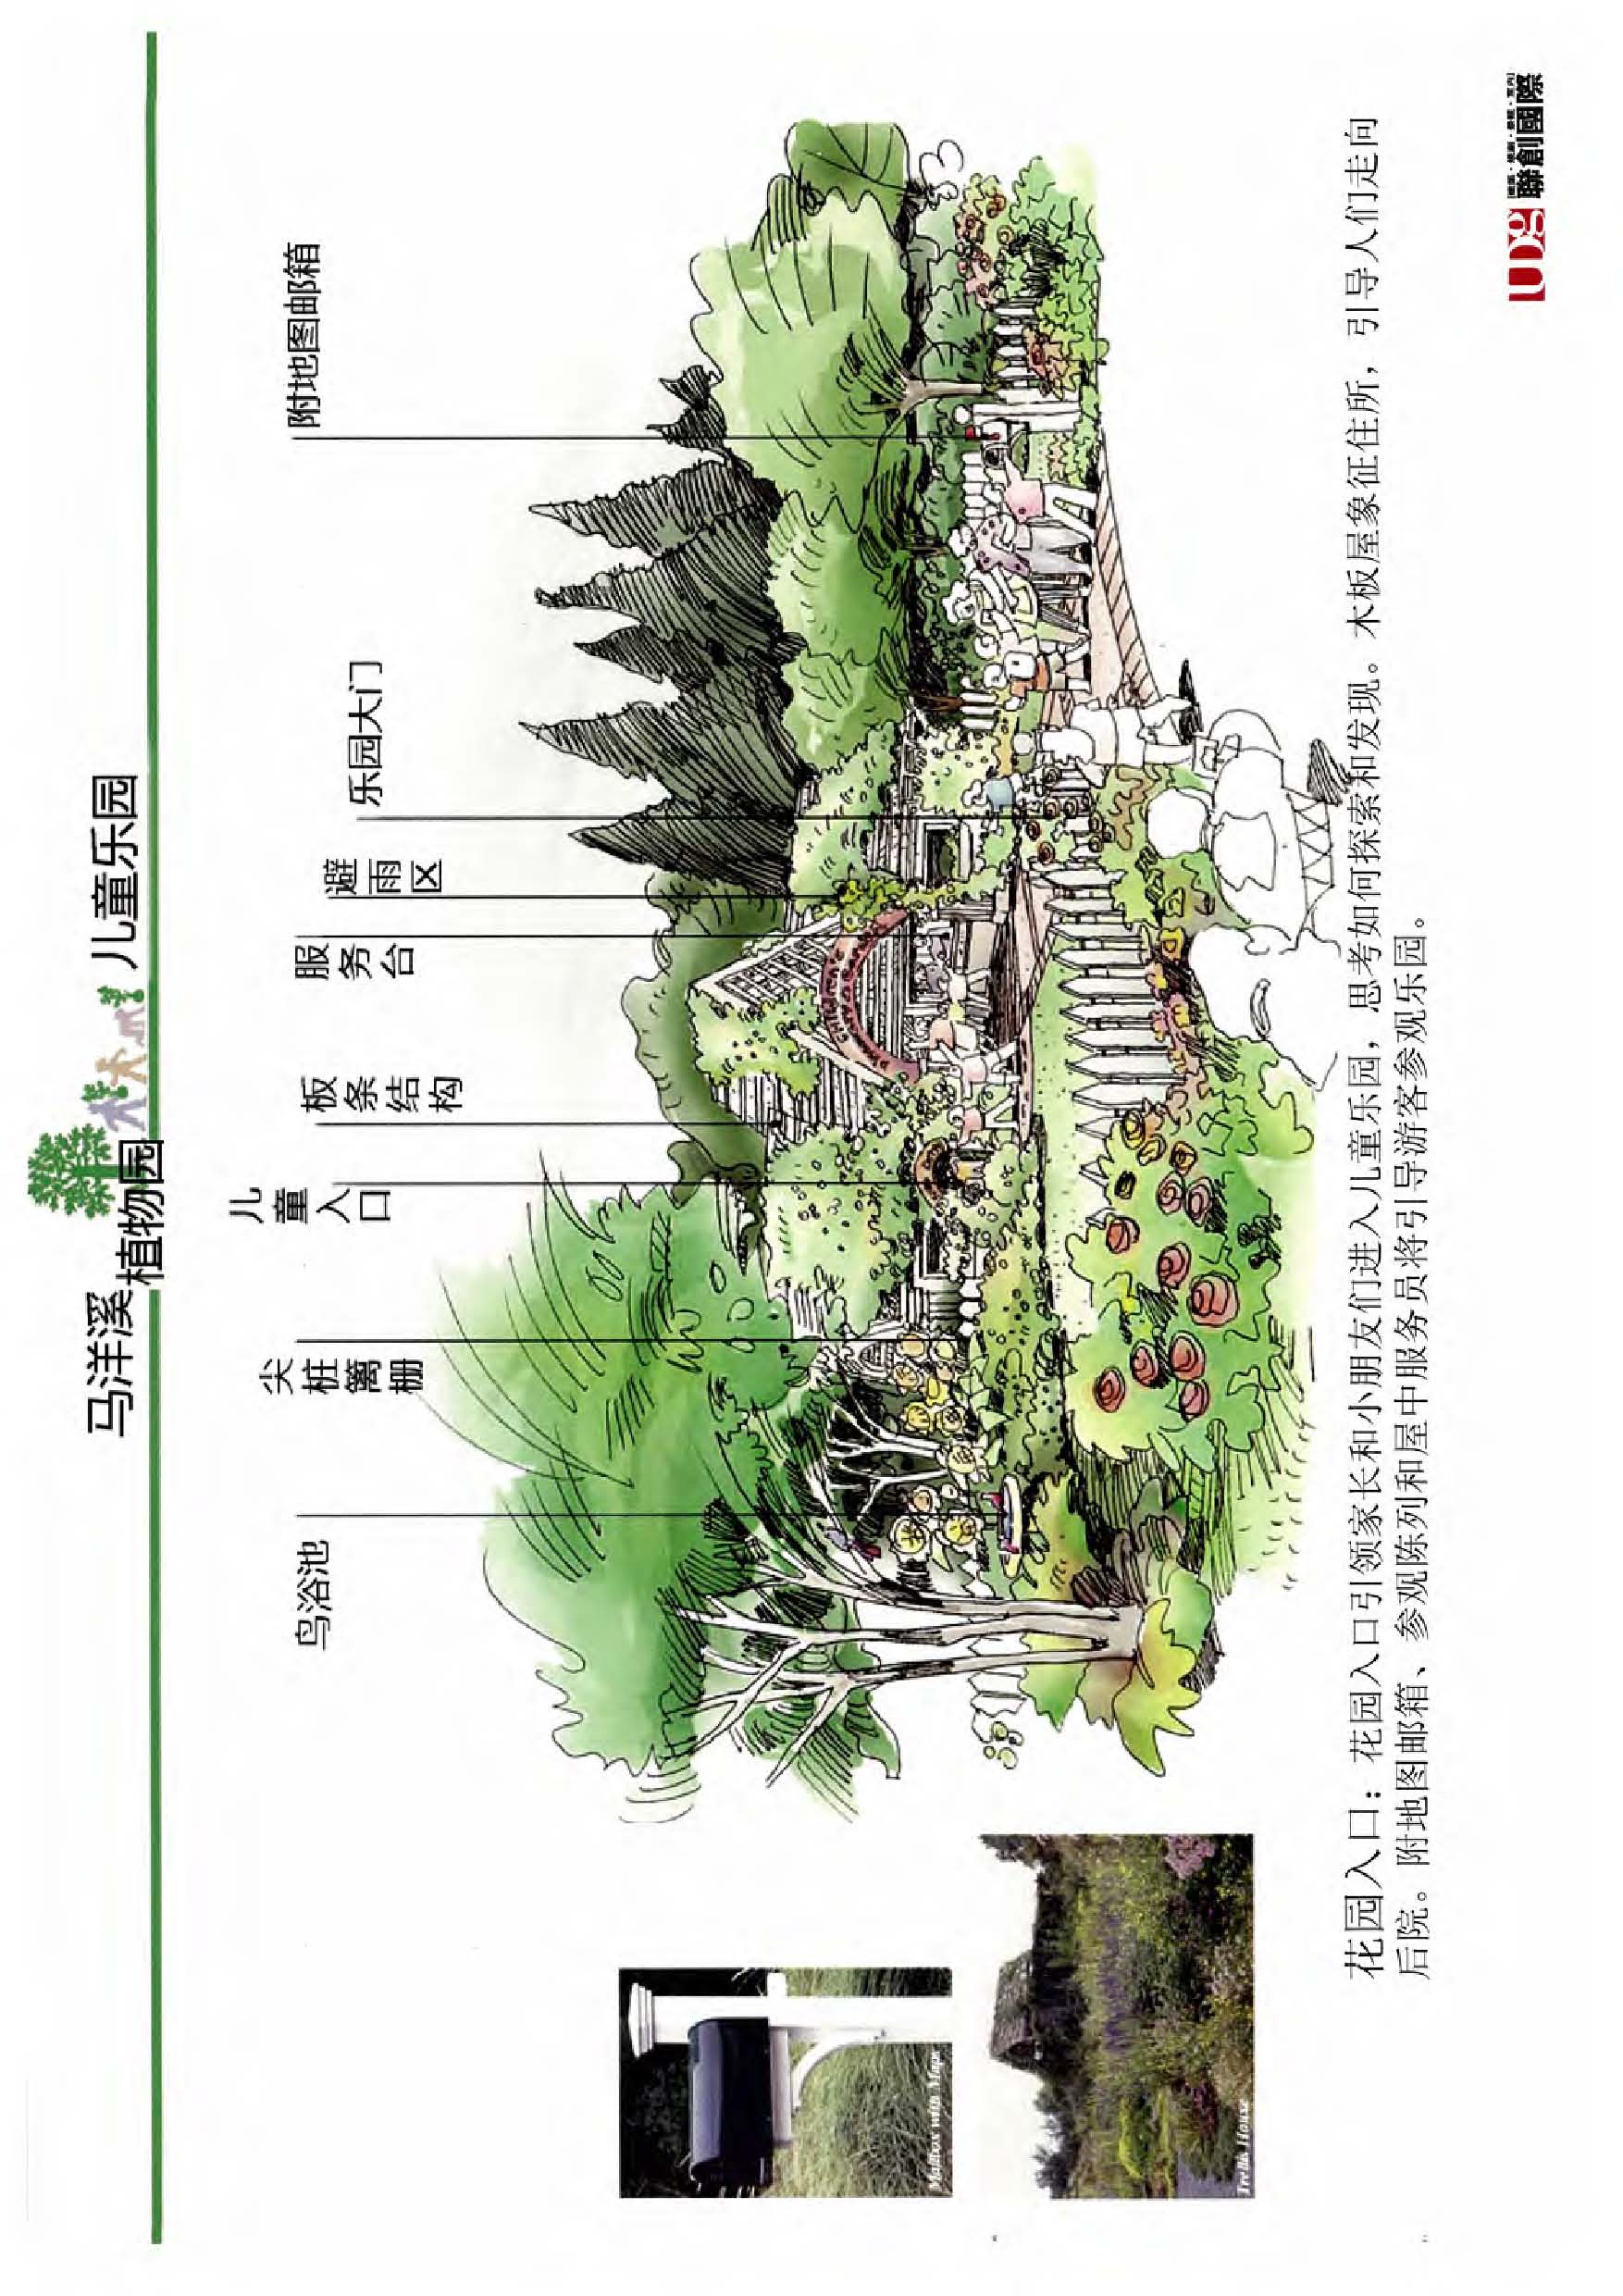 【福建】生态文化型城镇度假区规划设计方案